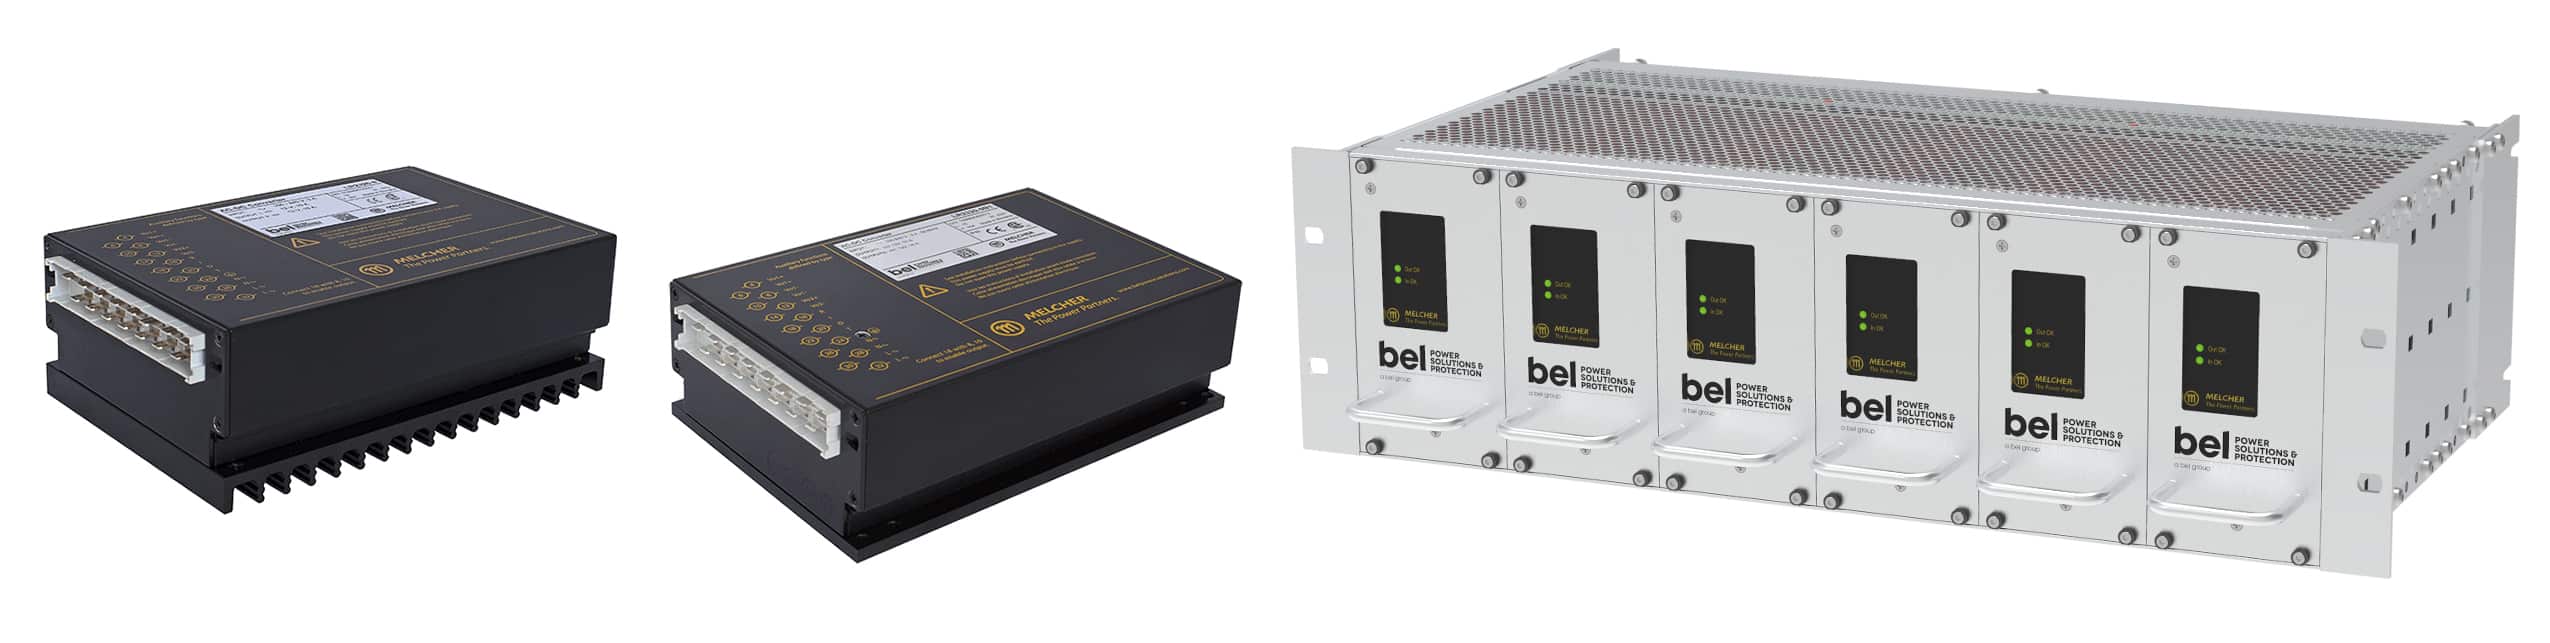 EN50155 Standard products from Bel Power